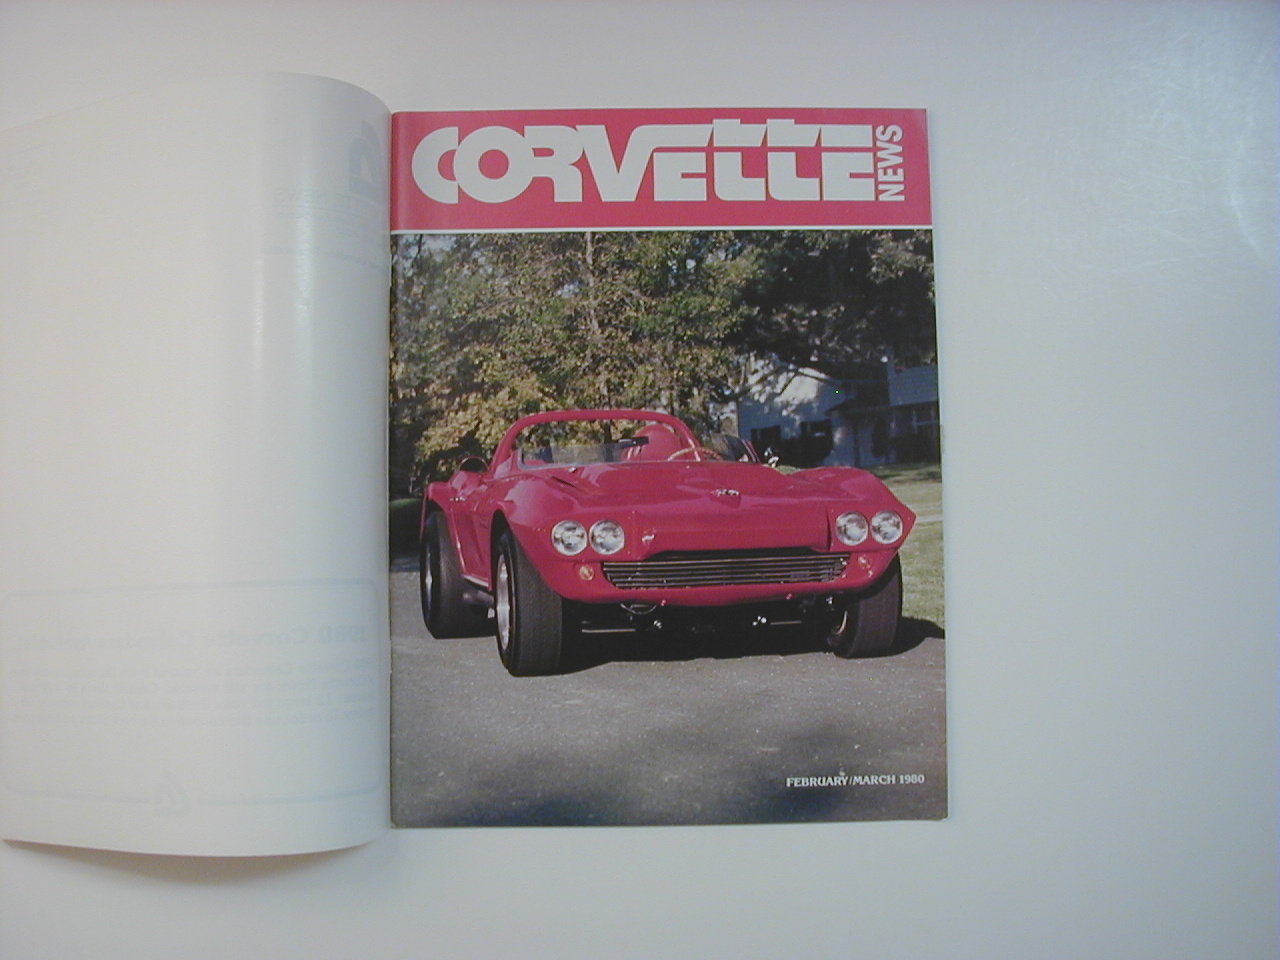 Corvette News Magazine Feb/Mar 1980